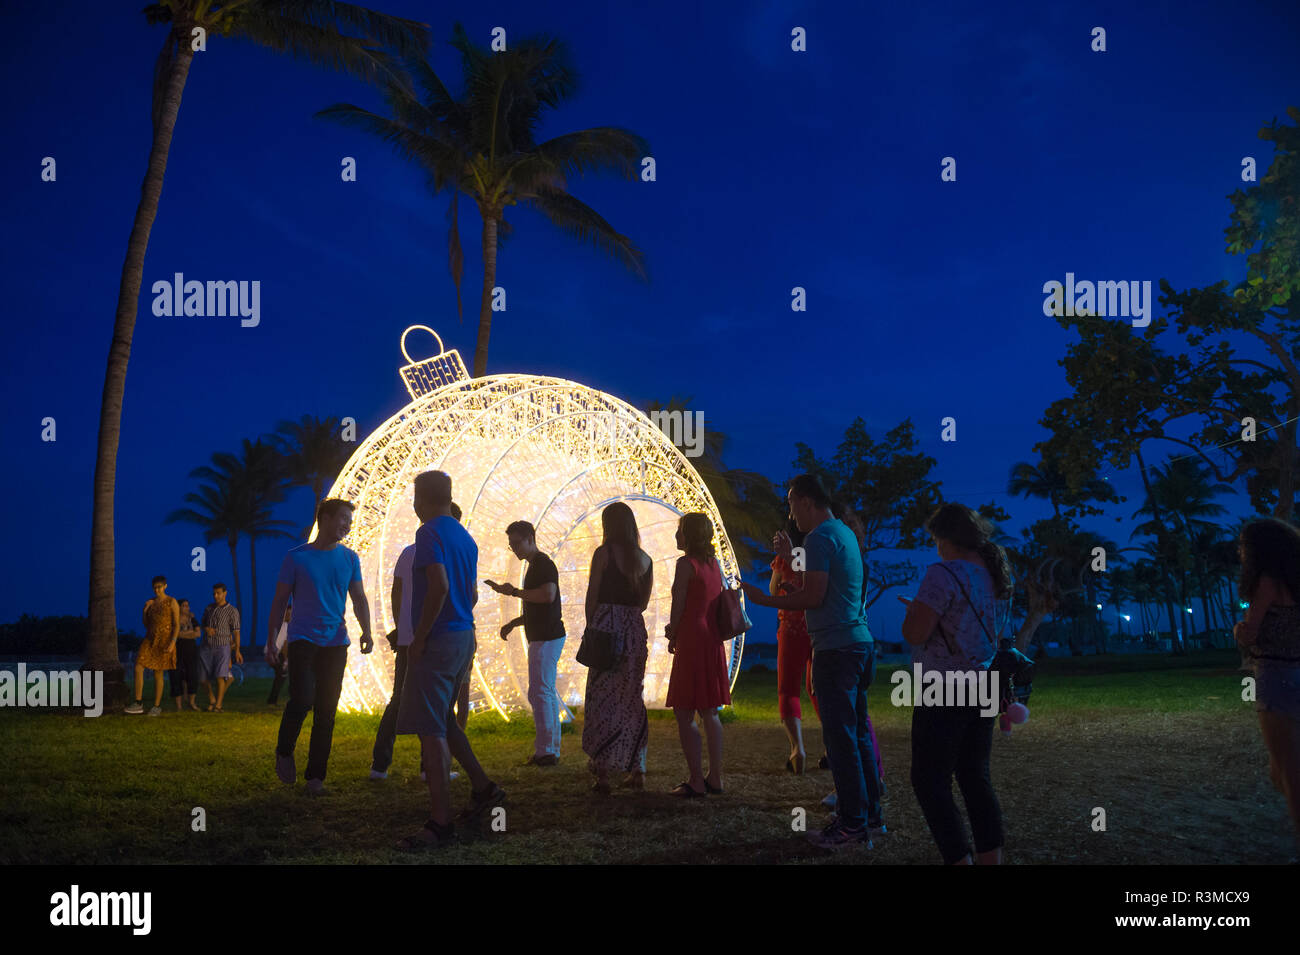 MIAMI - CIRCA DÉCEMBRE 2017 : Les visiteurs se réunissent pour prendre des photos en face d'un gigantesque sapin noël ornement situé dans les palmiers de Lummus Park. Banque D'Images